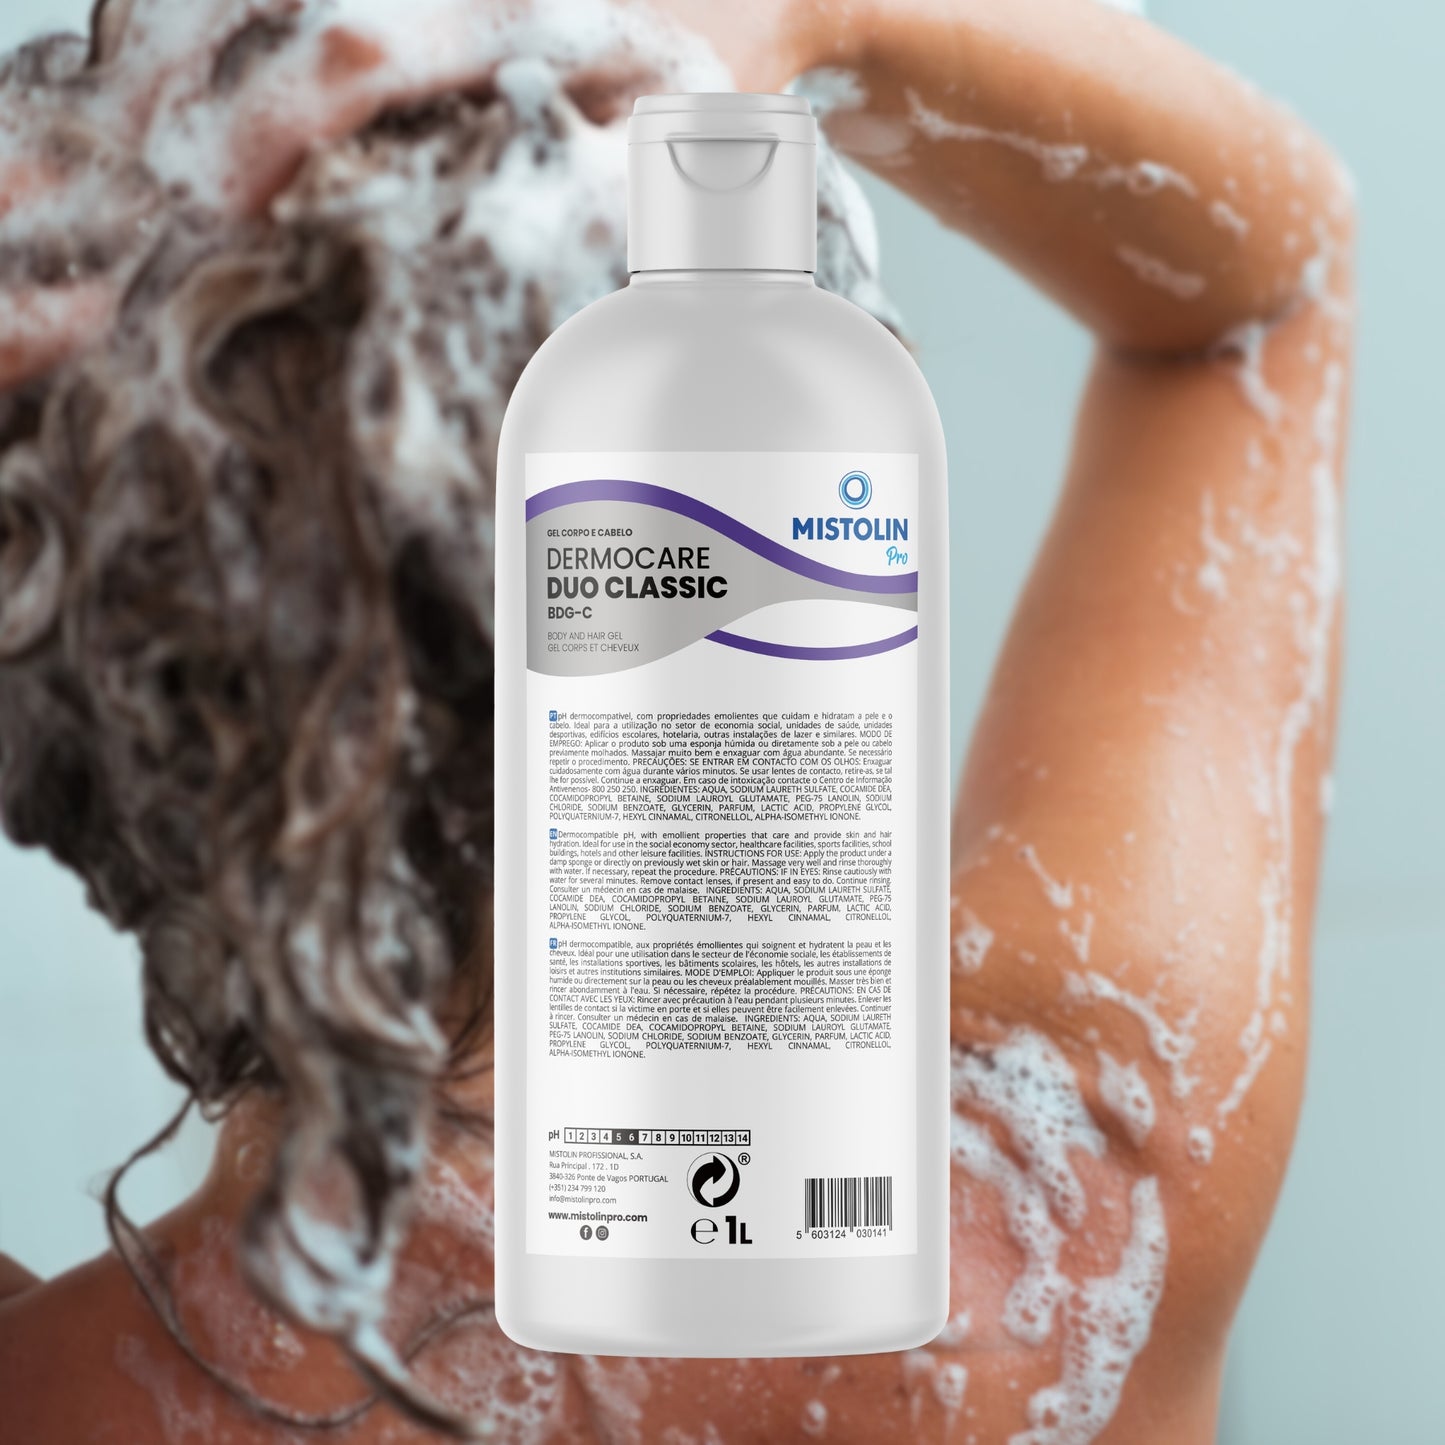 DERMOCARE DUO CLASSIC BDG-C GEL CORPO|CABELO 1LT, é um gel de banho indicado para uma higiene completa do corpo e cabelo, proporcionando hidratação e equilíbrio saudável da pele e couro cabeludo.